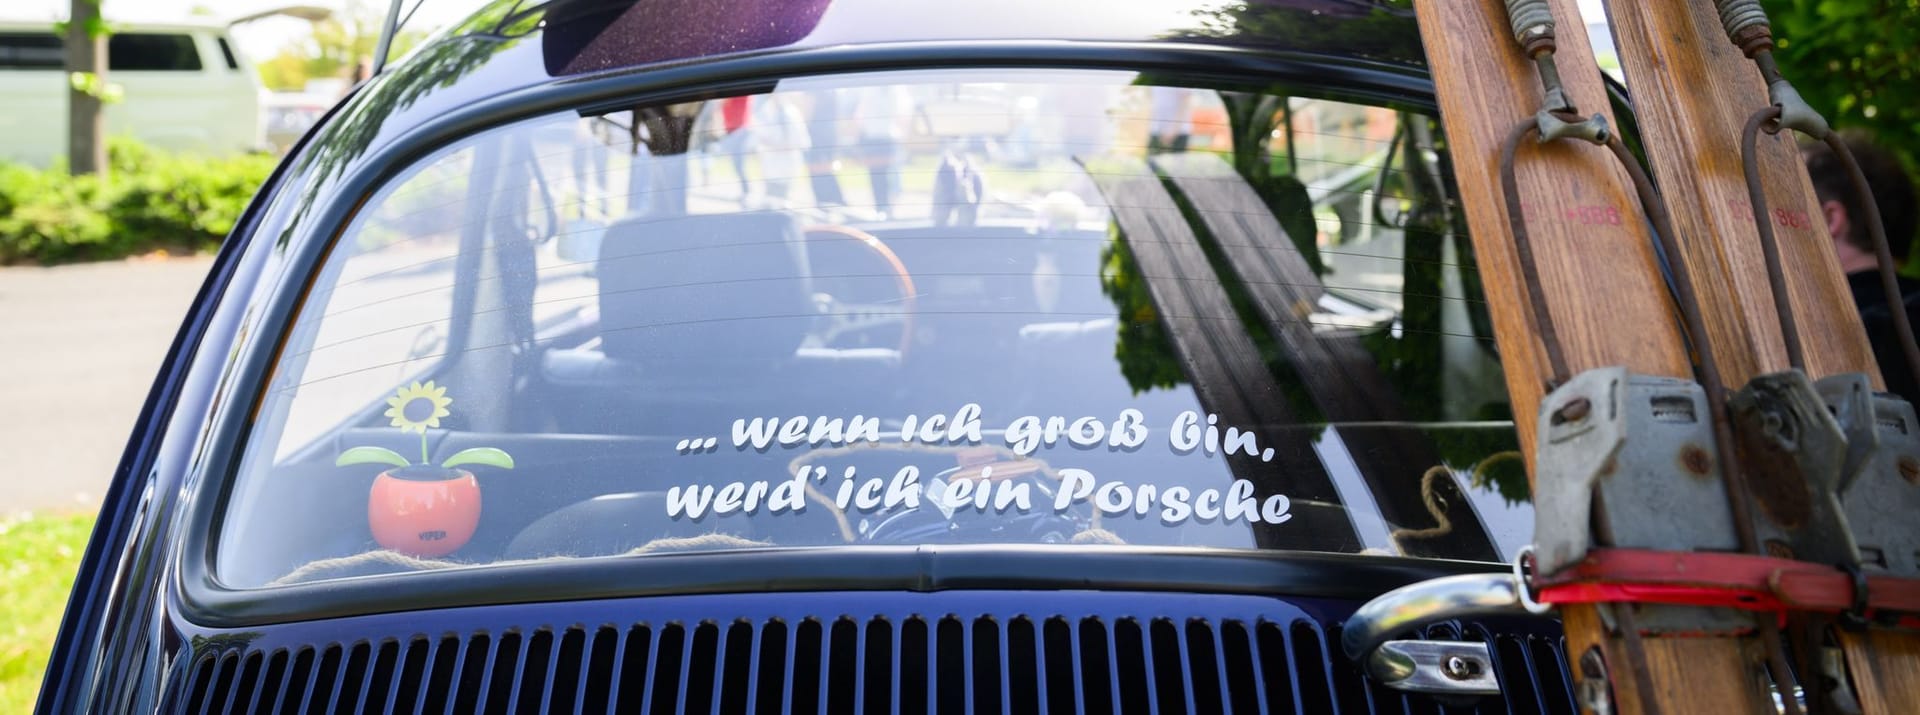 Träumen erlaubt: "... wenn ich groß bin, werd' ich ein Porsche", klebt auf einem VW Käfer.